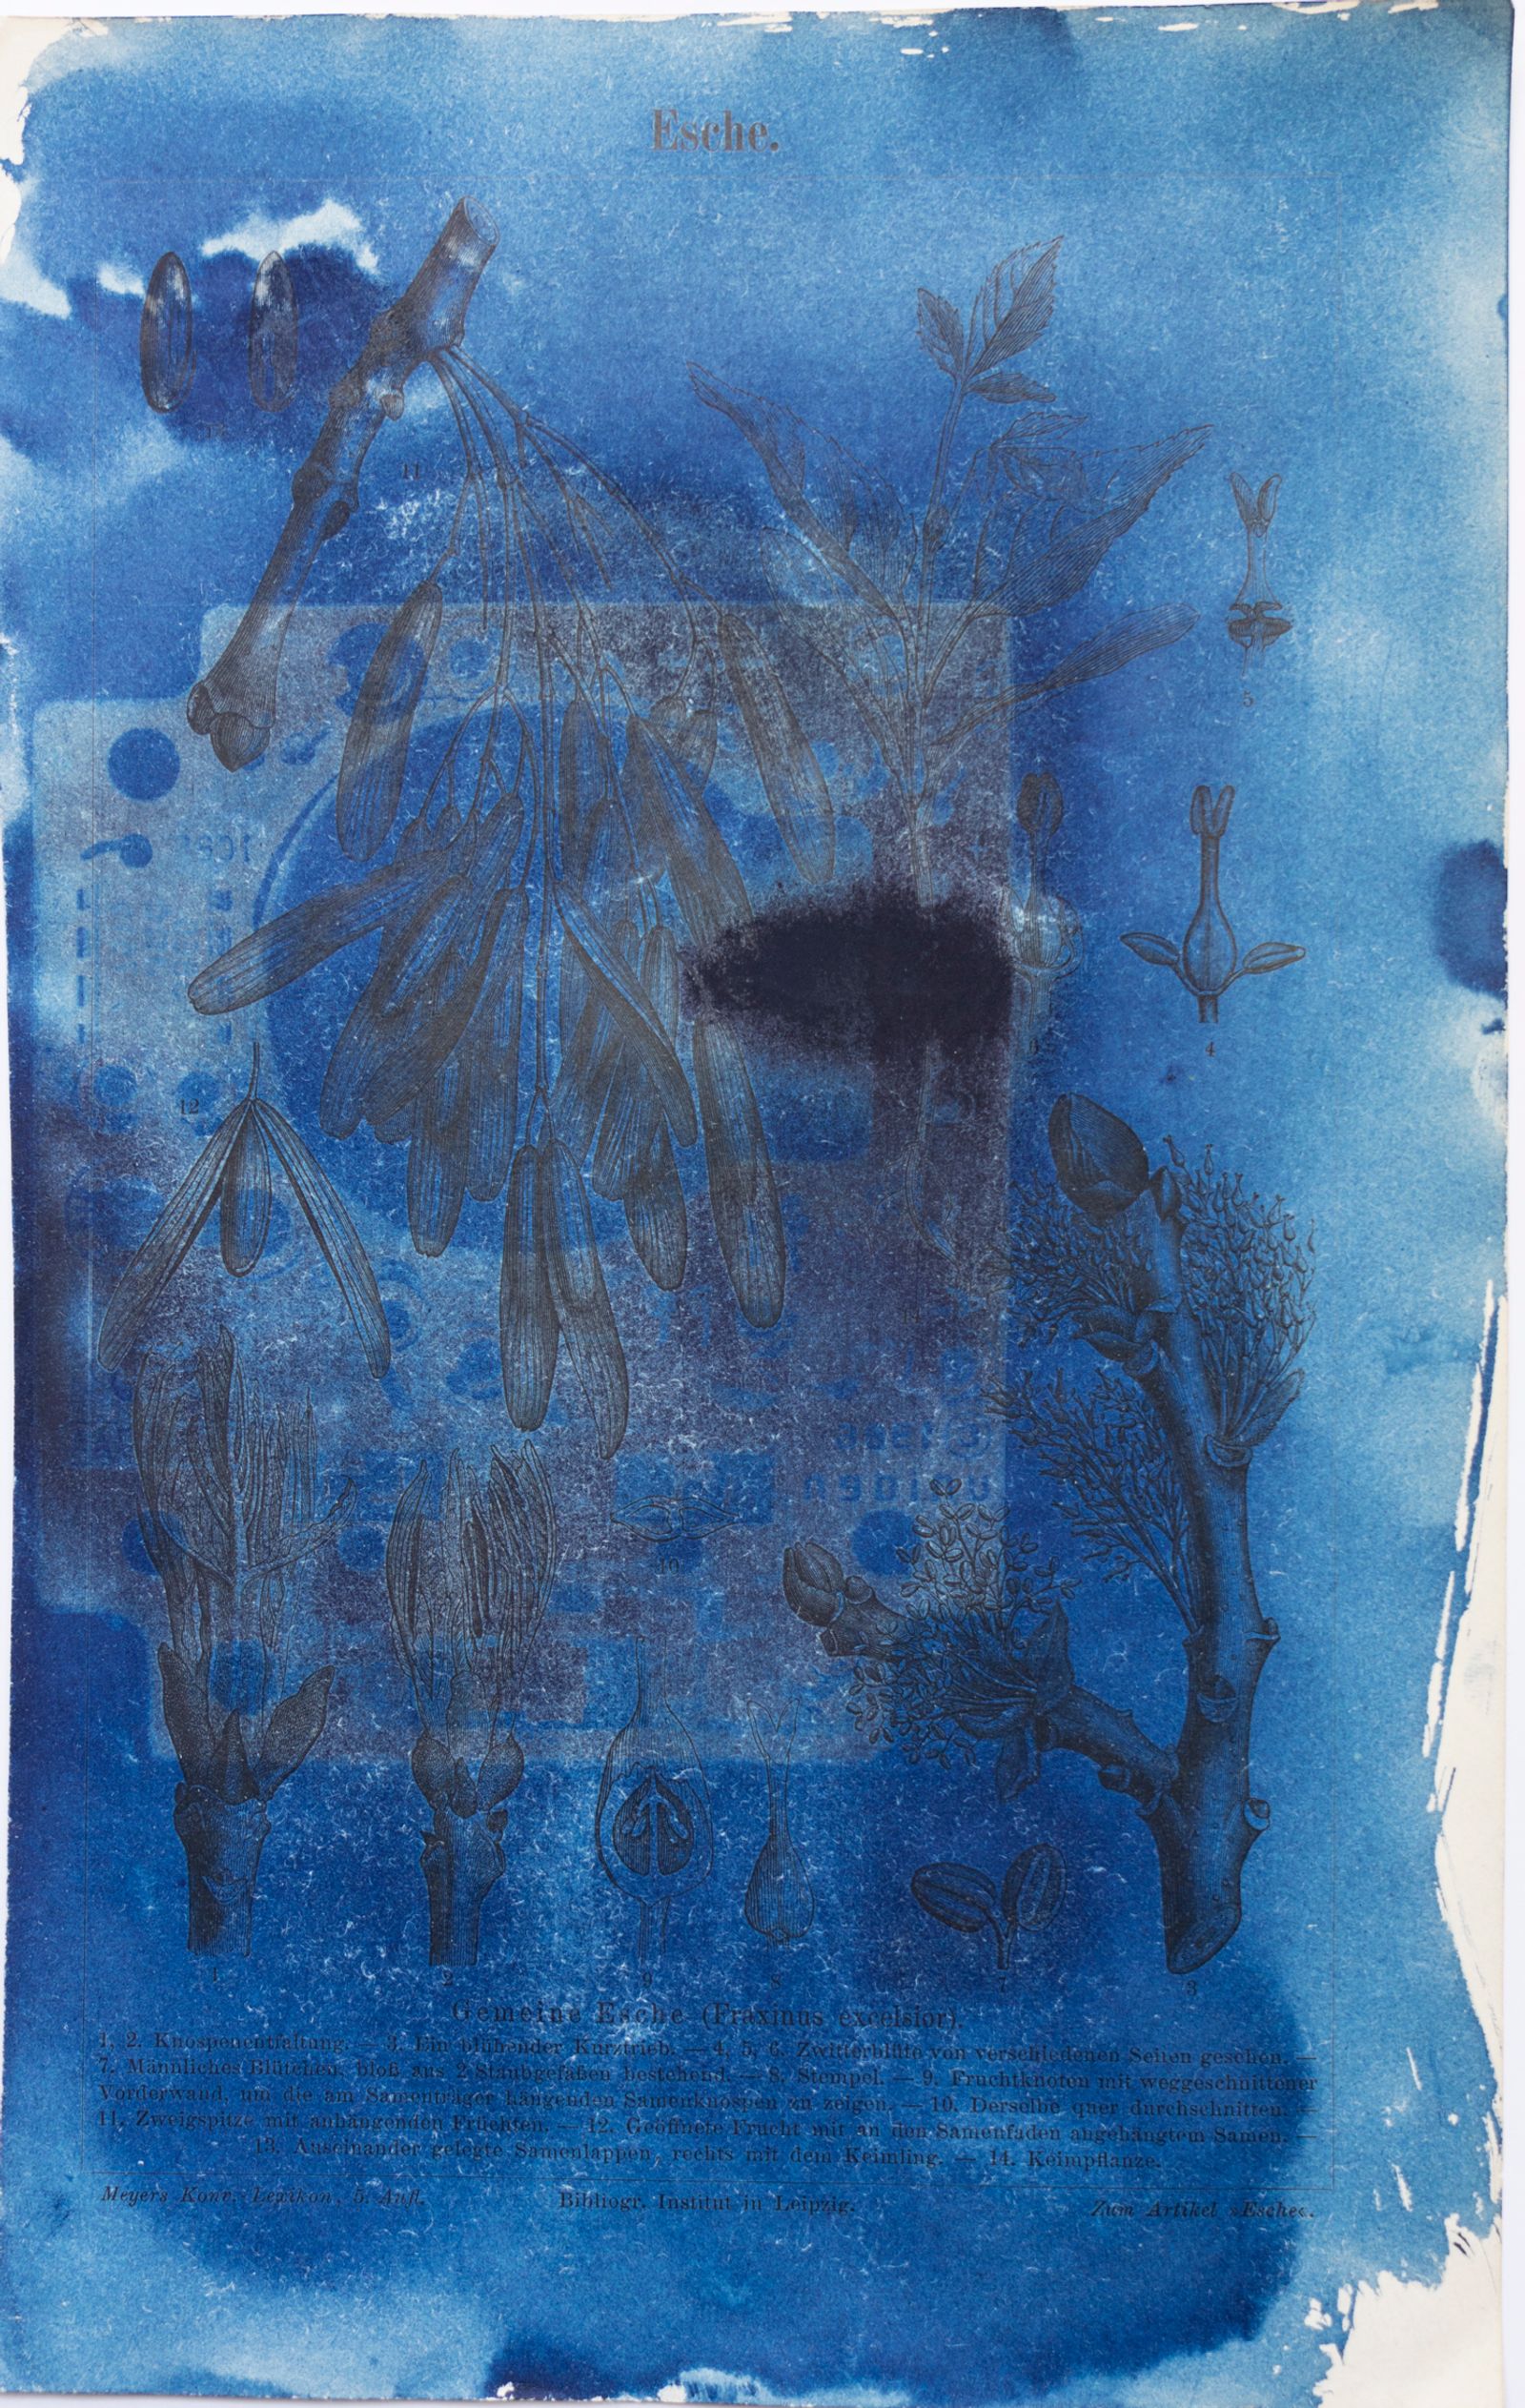 © Florence Iff - Amalgamated Fragmentation/ Technosphere- Board 4 cyanotype on vintage lithography